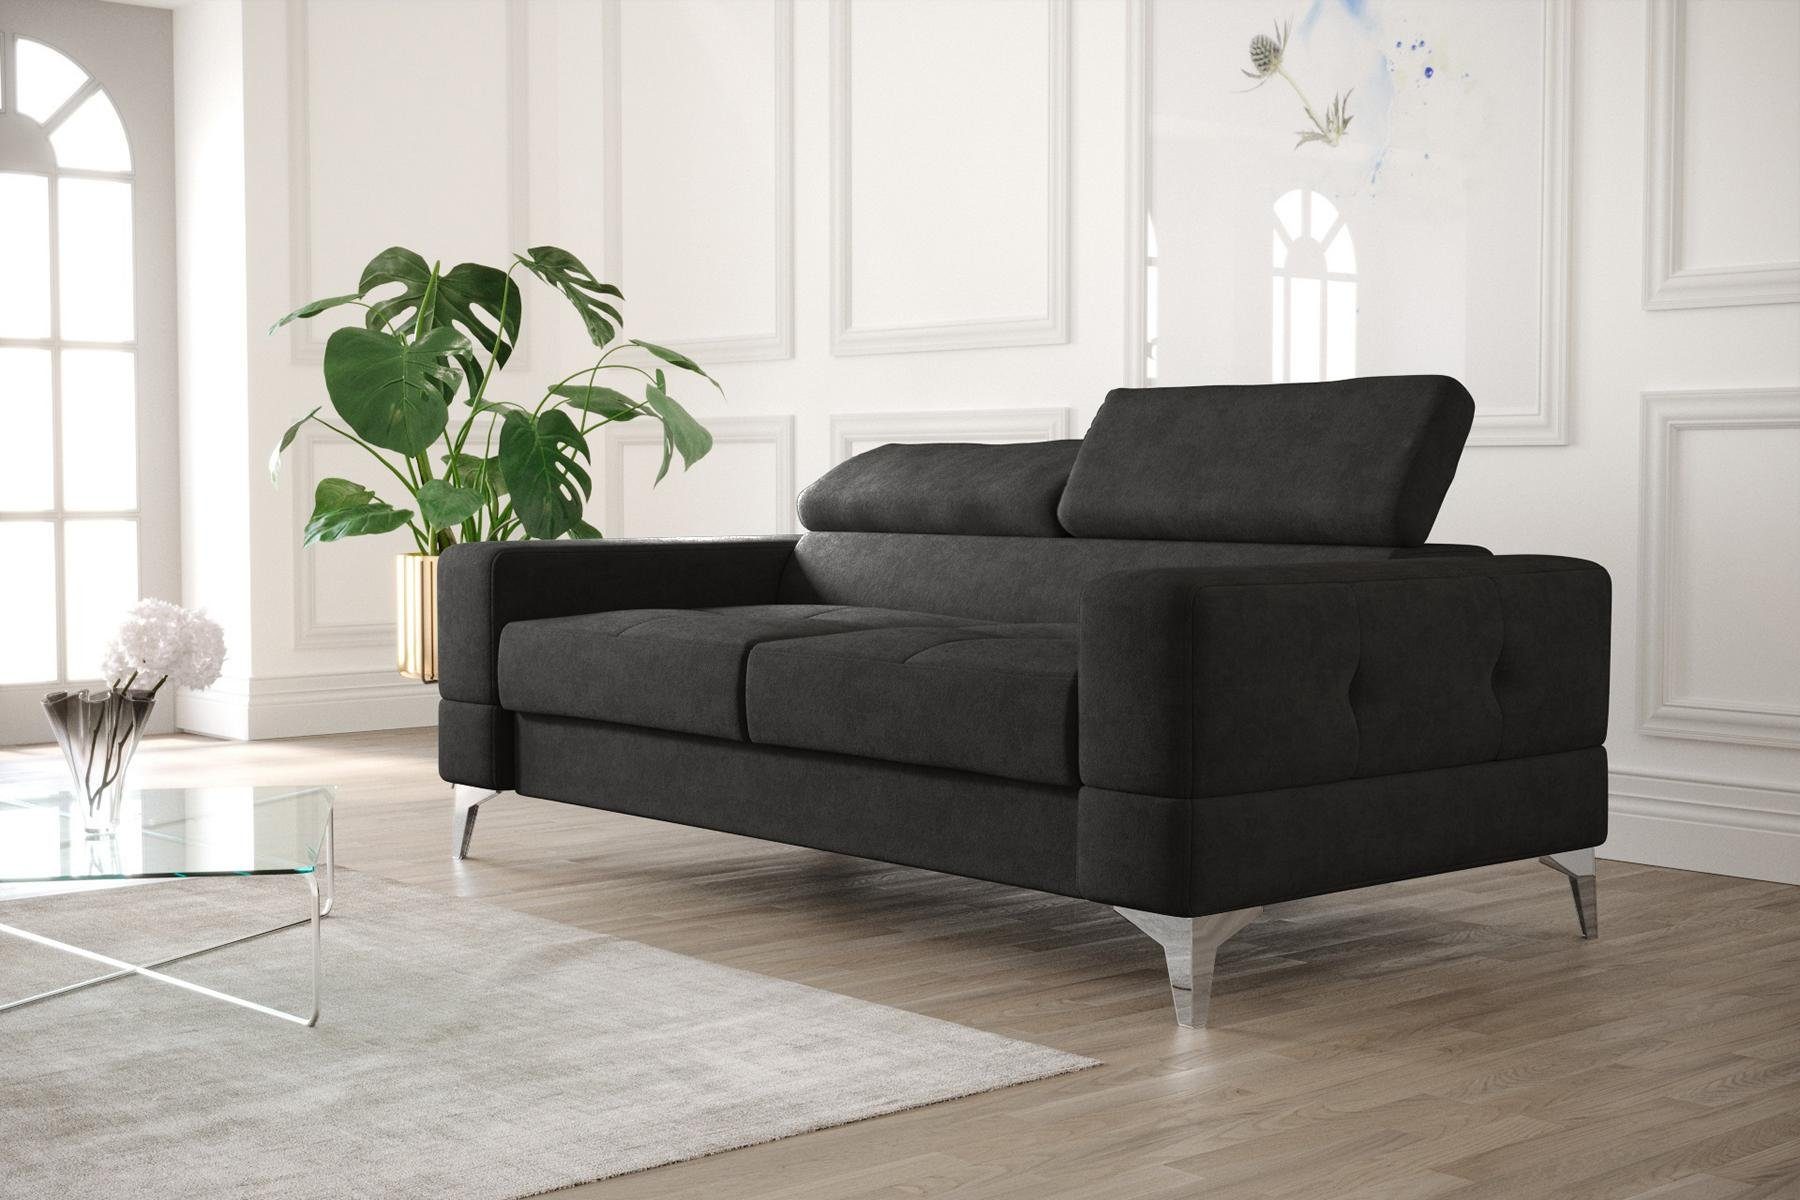 JVmoebel Sofa Schwarzer Zweisitzer Luxus Couch Moderne Wohnzimmer Sitzmöbel, Made in Europe